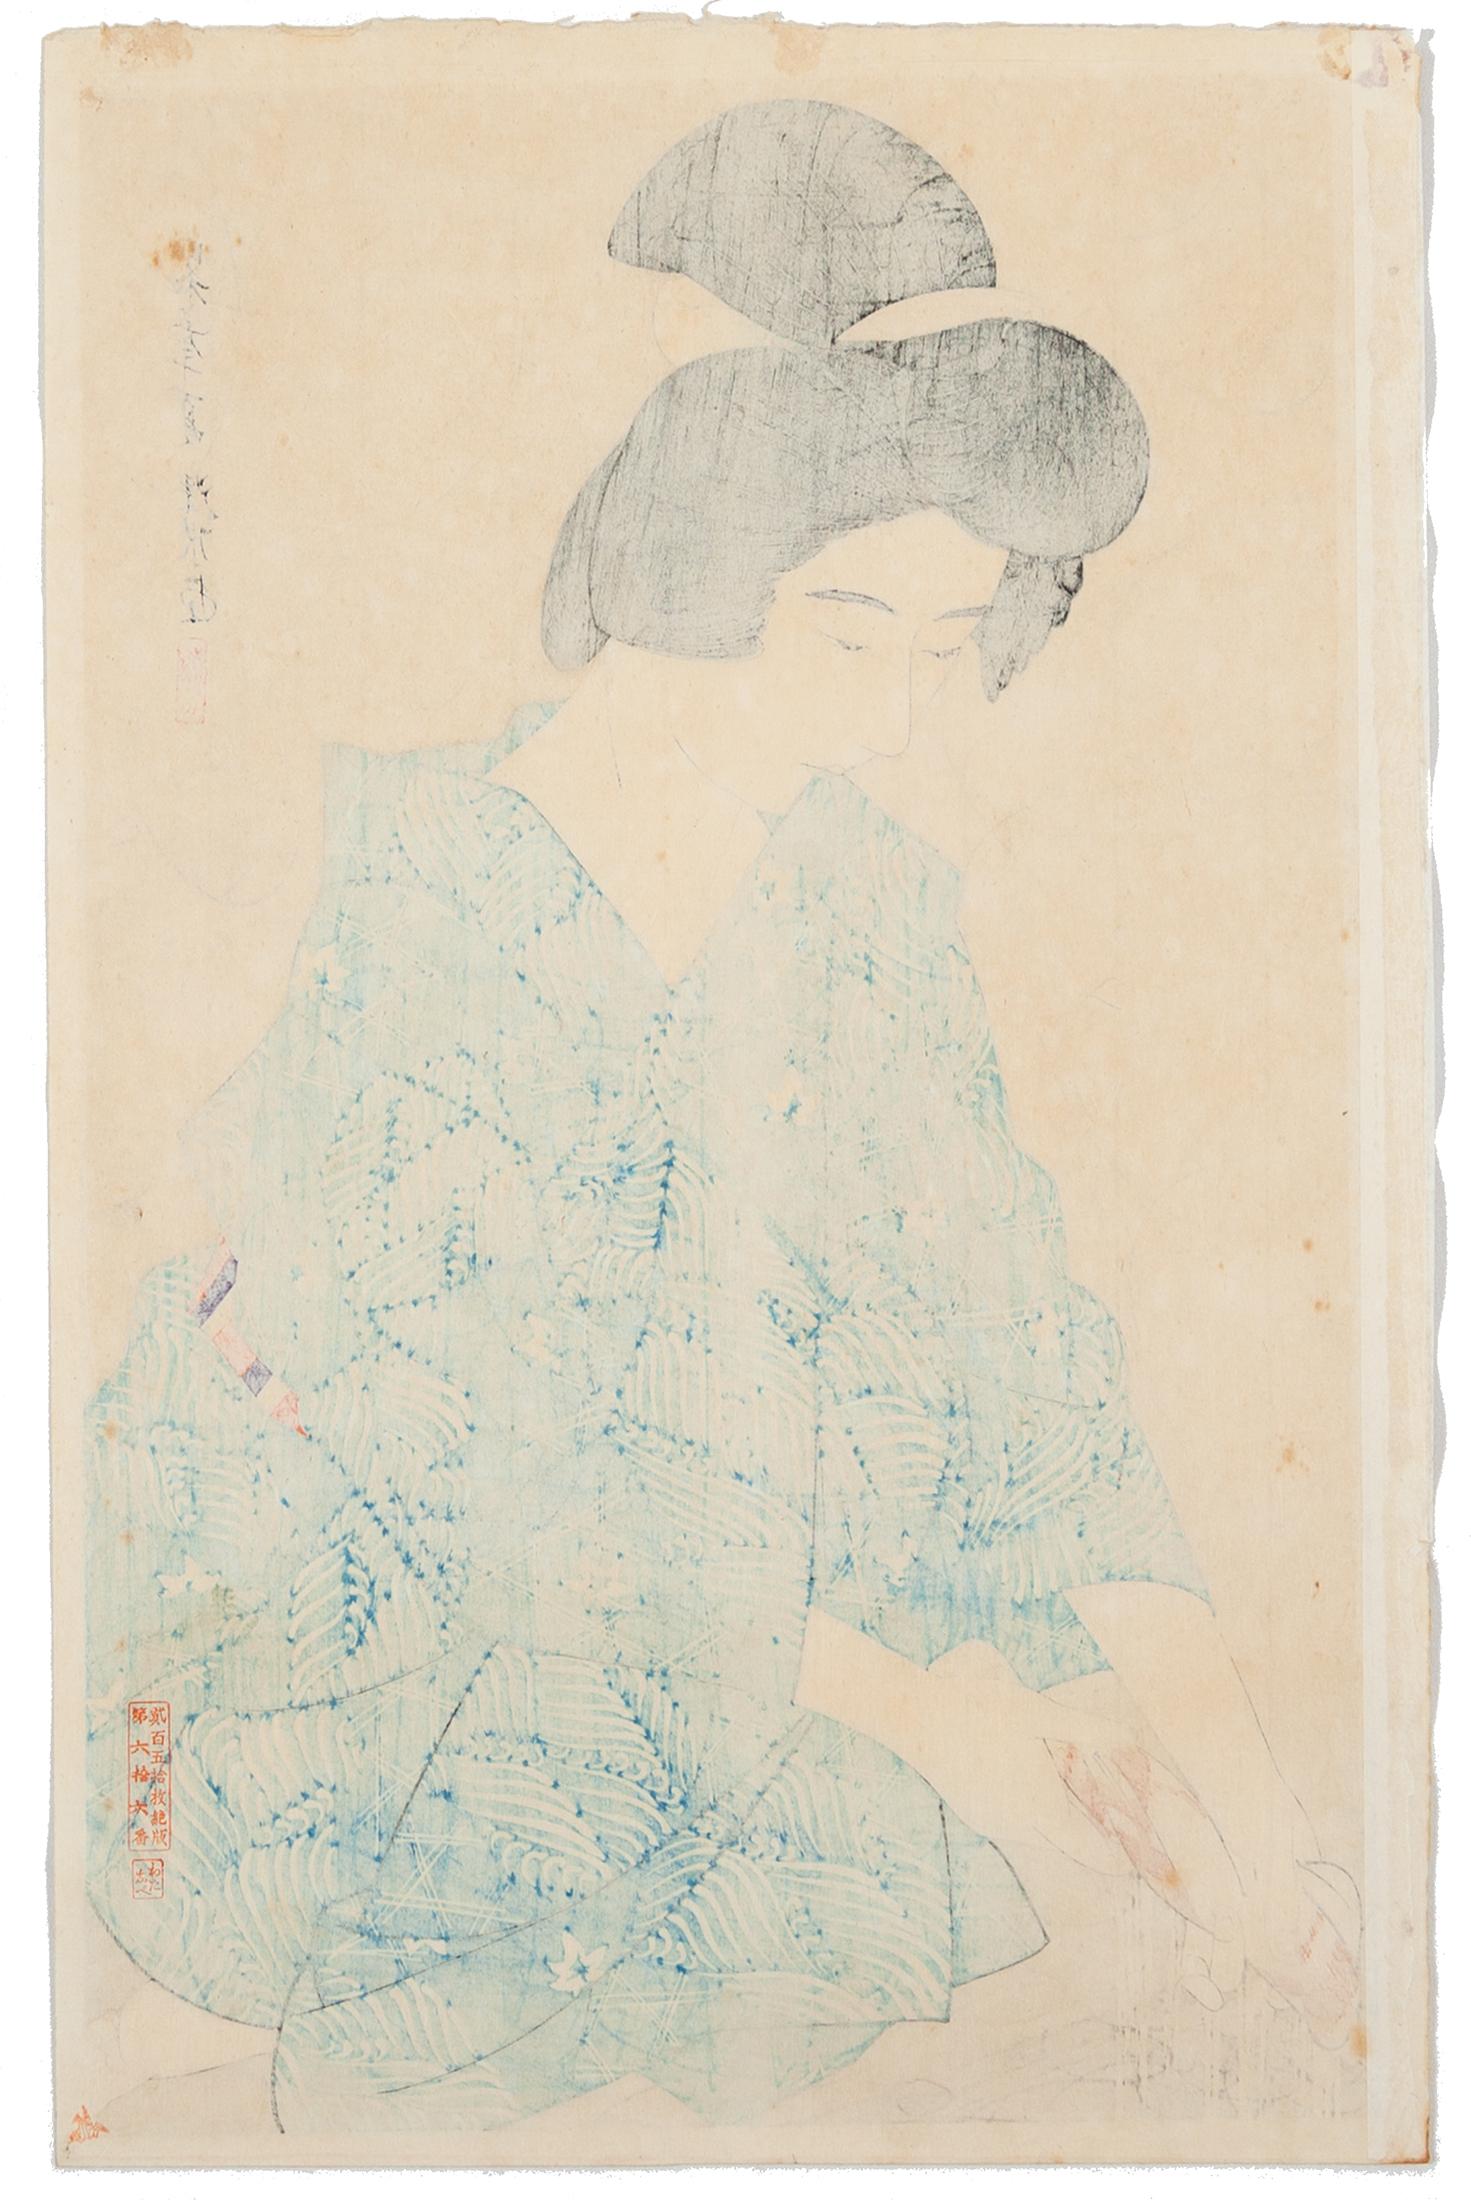 Artiste : Ito Shinsui (1898-1972)
Titre : Après le bain 
Editeur : Watanabe Shozaburo 
Date : 1930
Edition : 66/250
Dimensions : 17 x 42,7 cm

Une jeune femme, vêtue d'une robe en coton ornée de vagues et de feuilles d'érable stylisées,